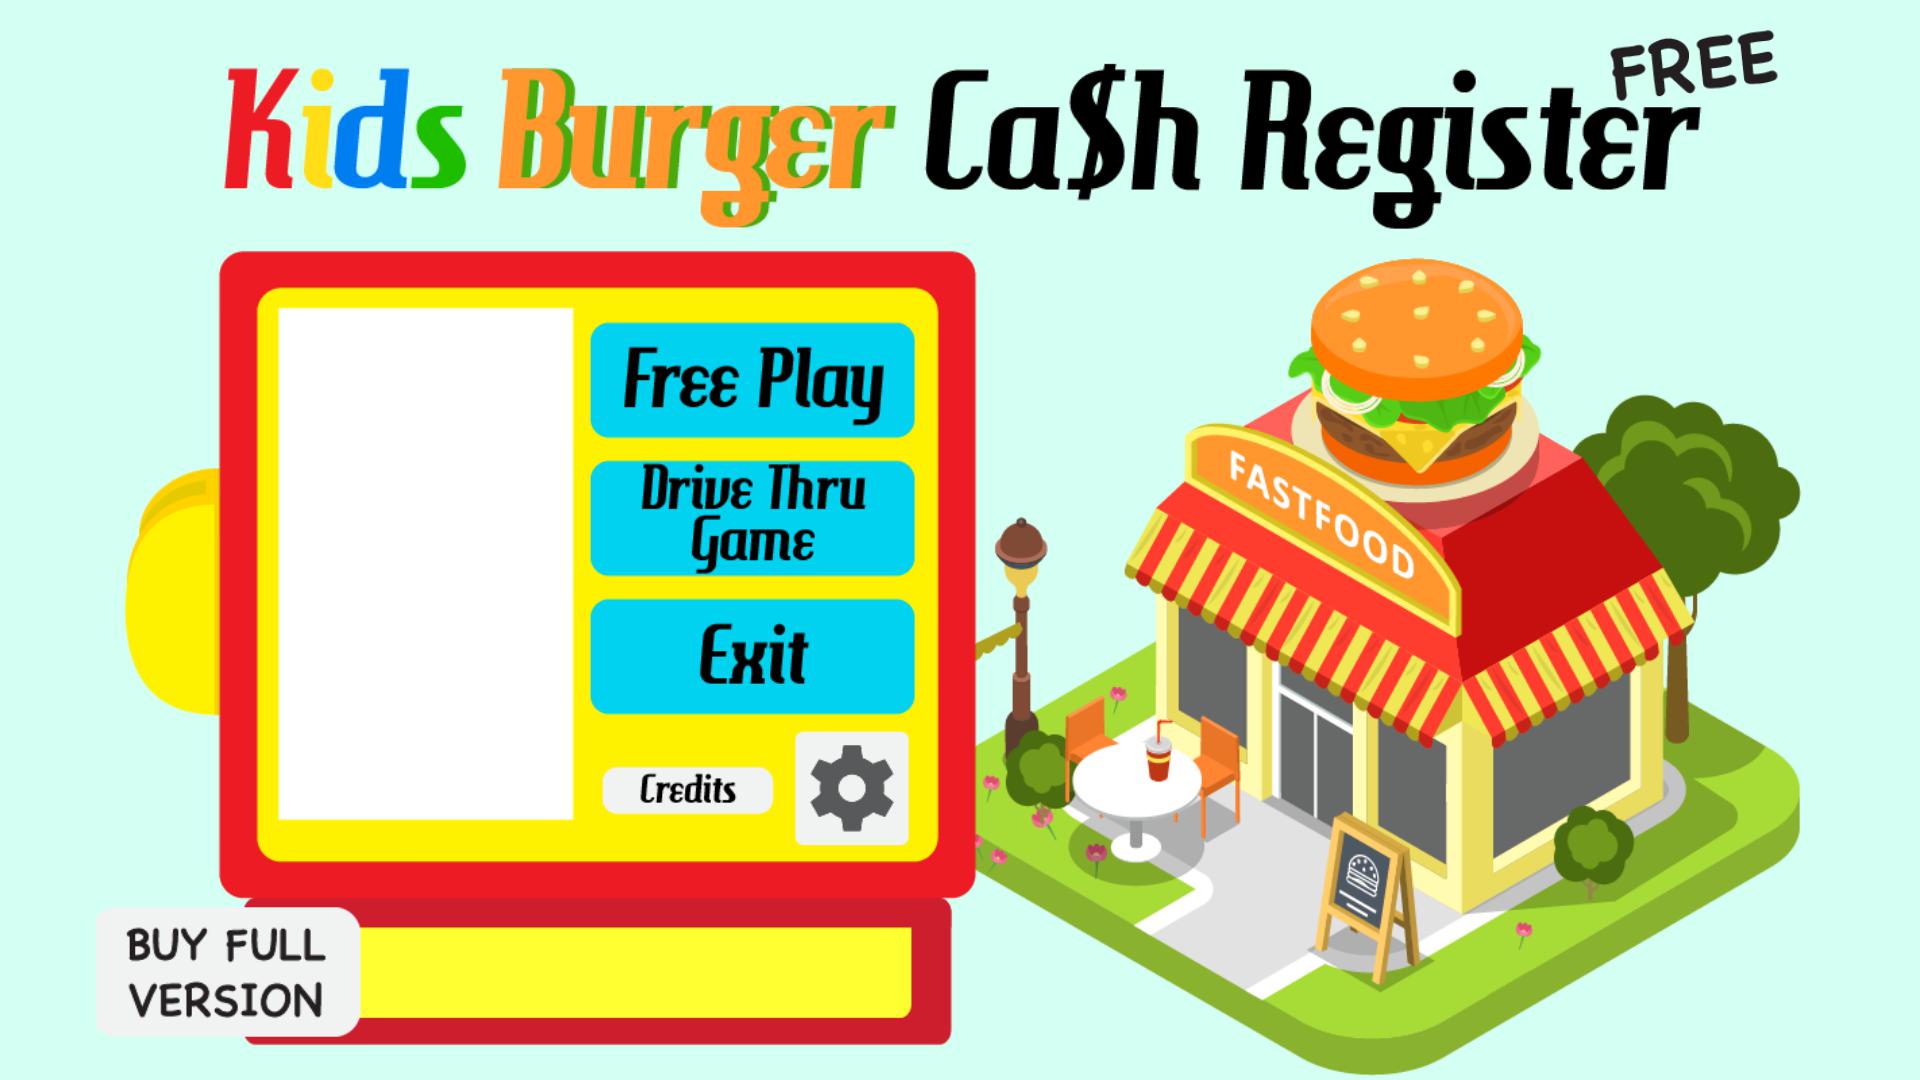 Kids Burger Cash Register